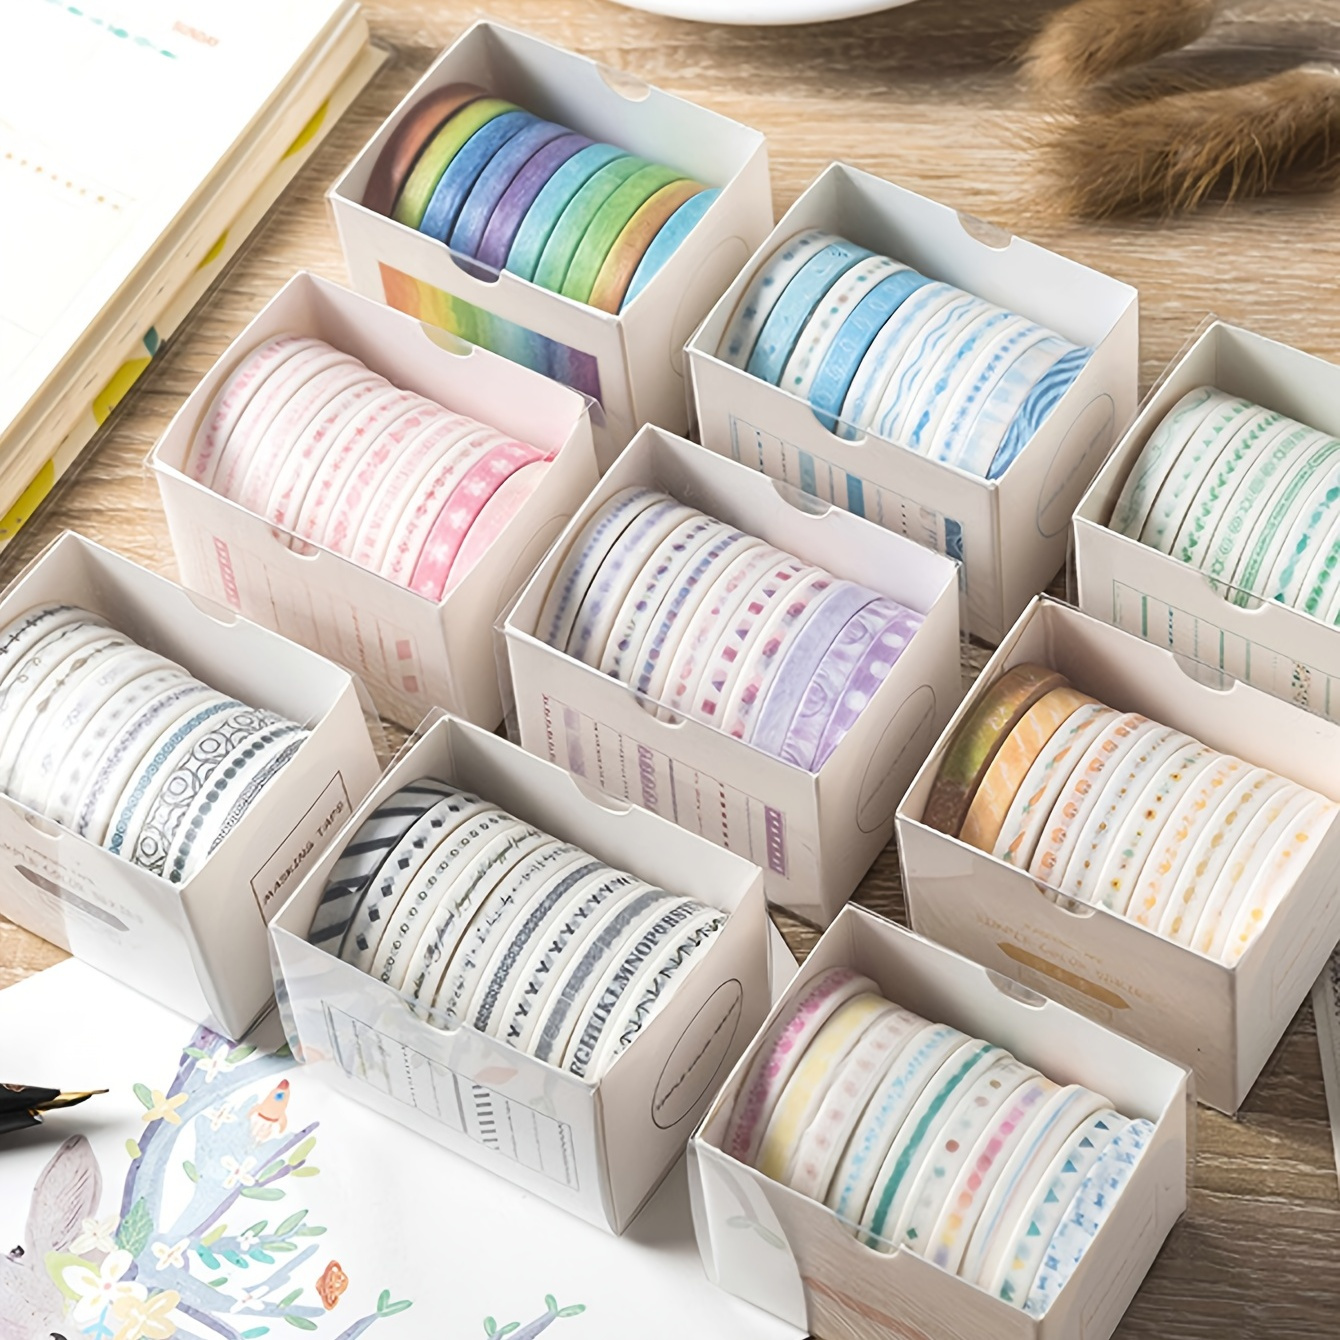 Minior Washi Tape | Cute tape for scrapbooking cardmaking journaling